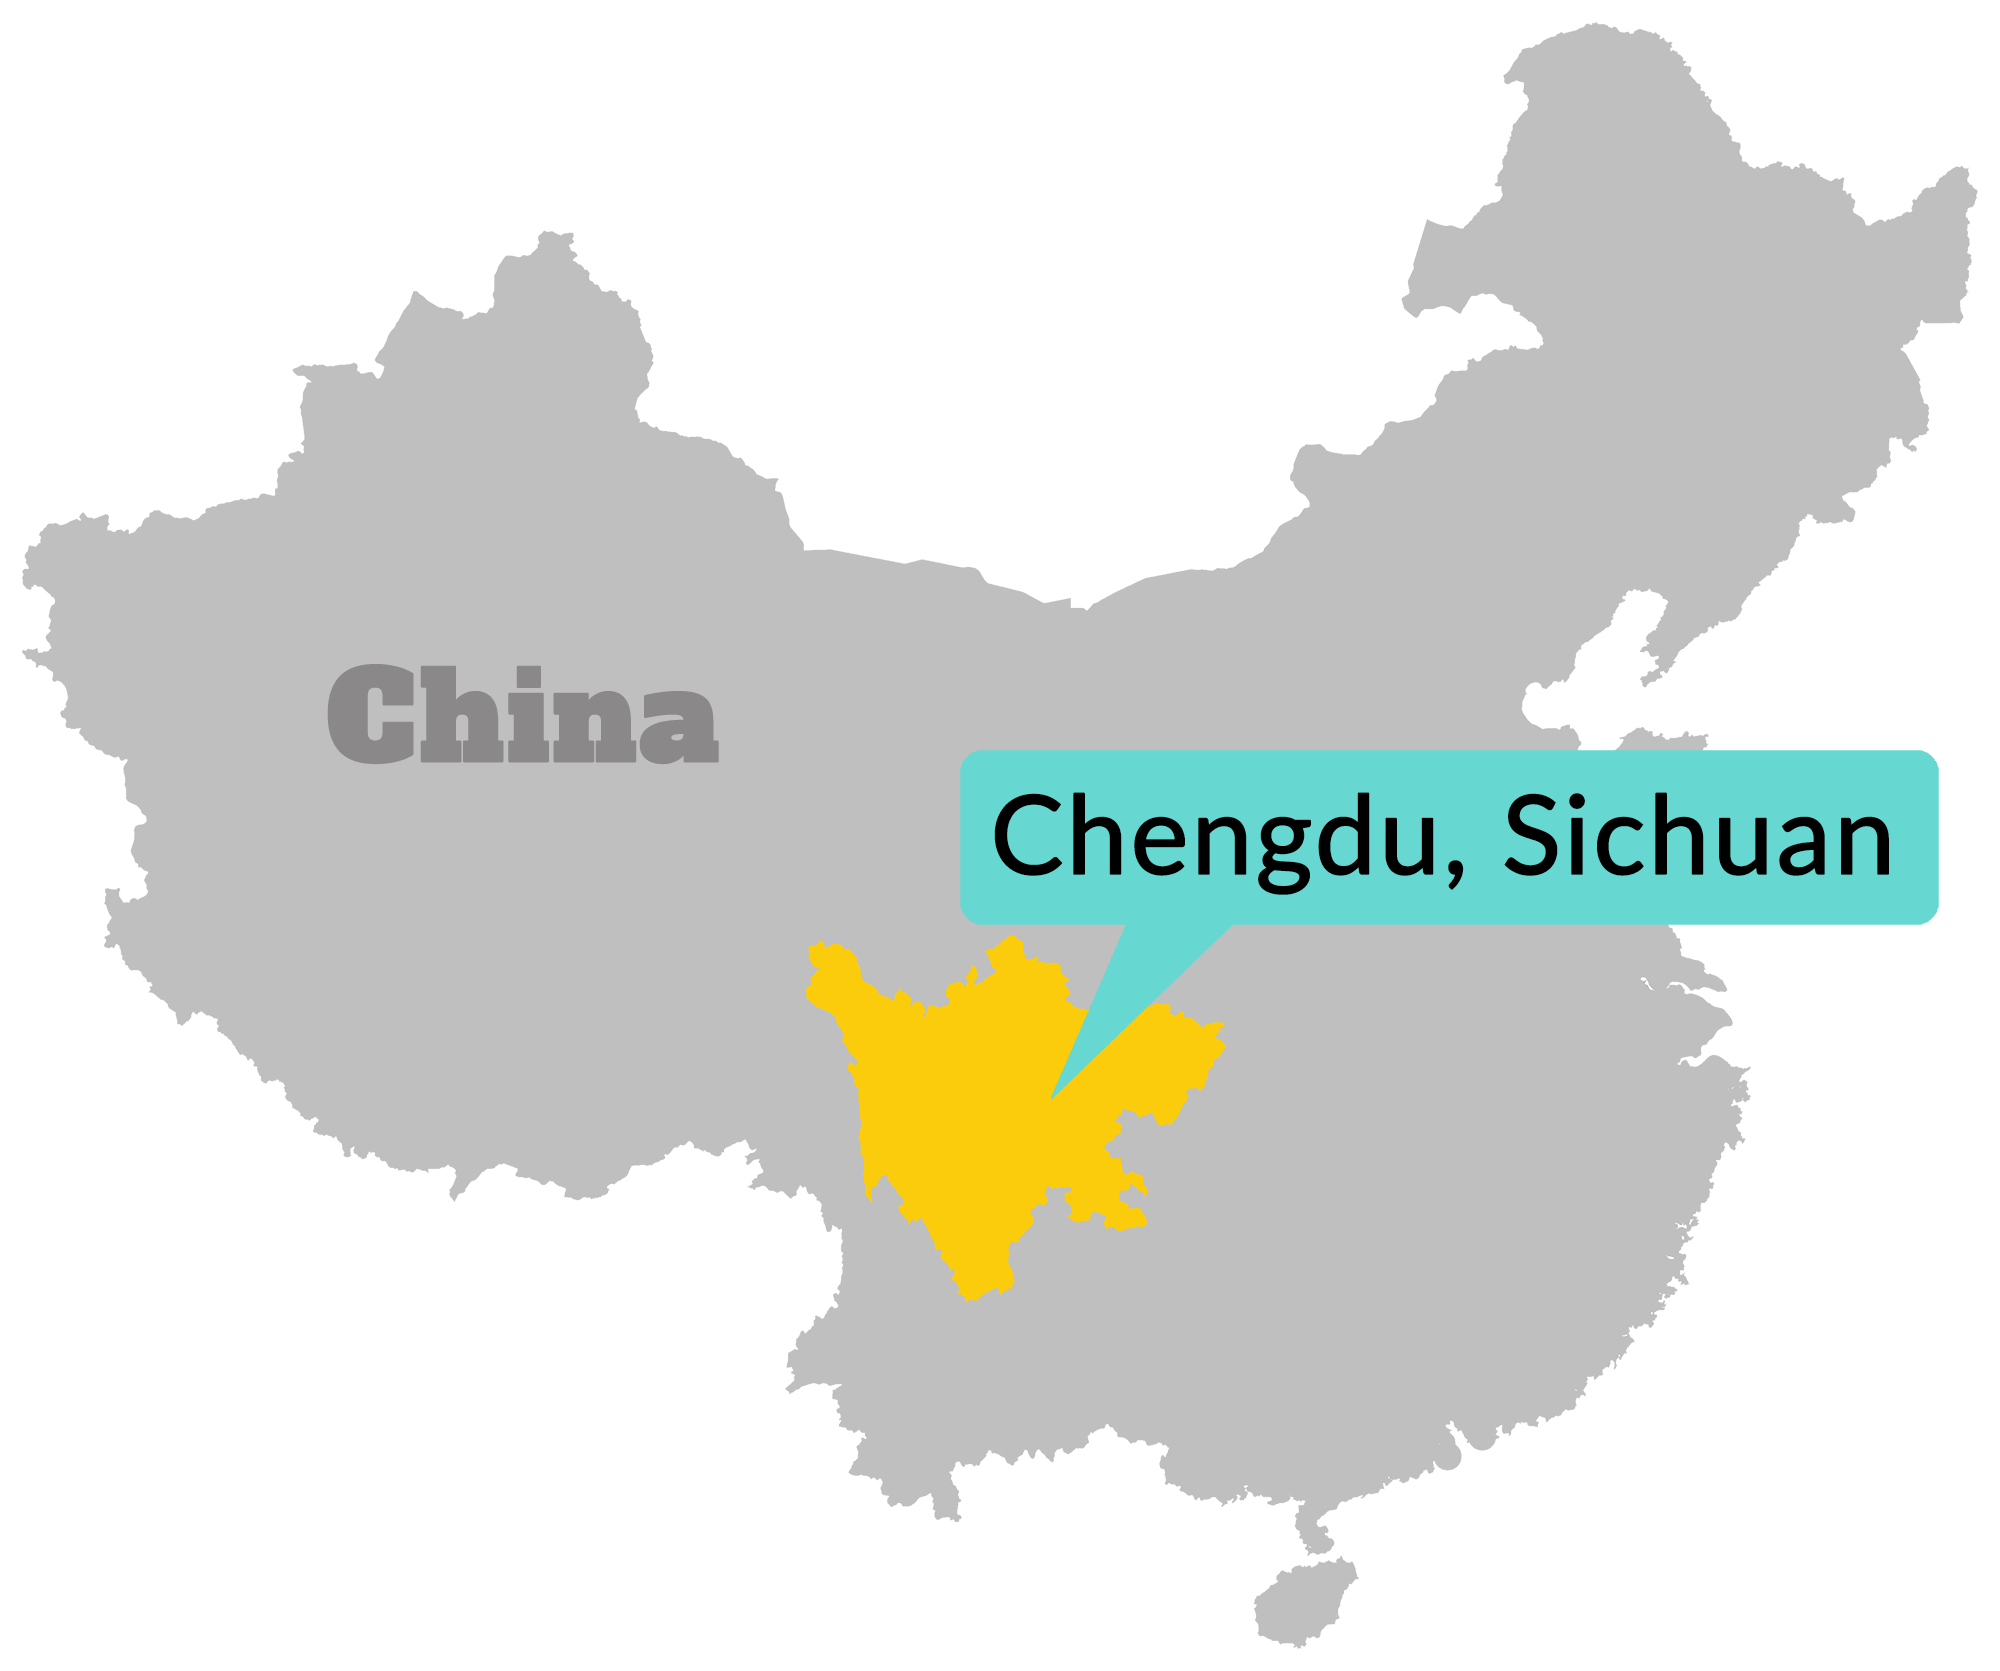 Chengdu Sichuan Map